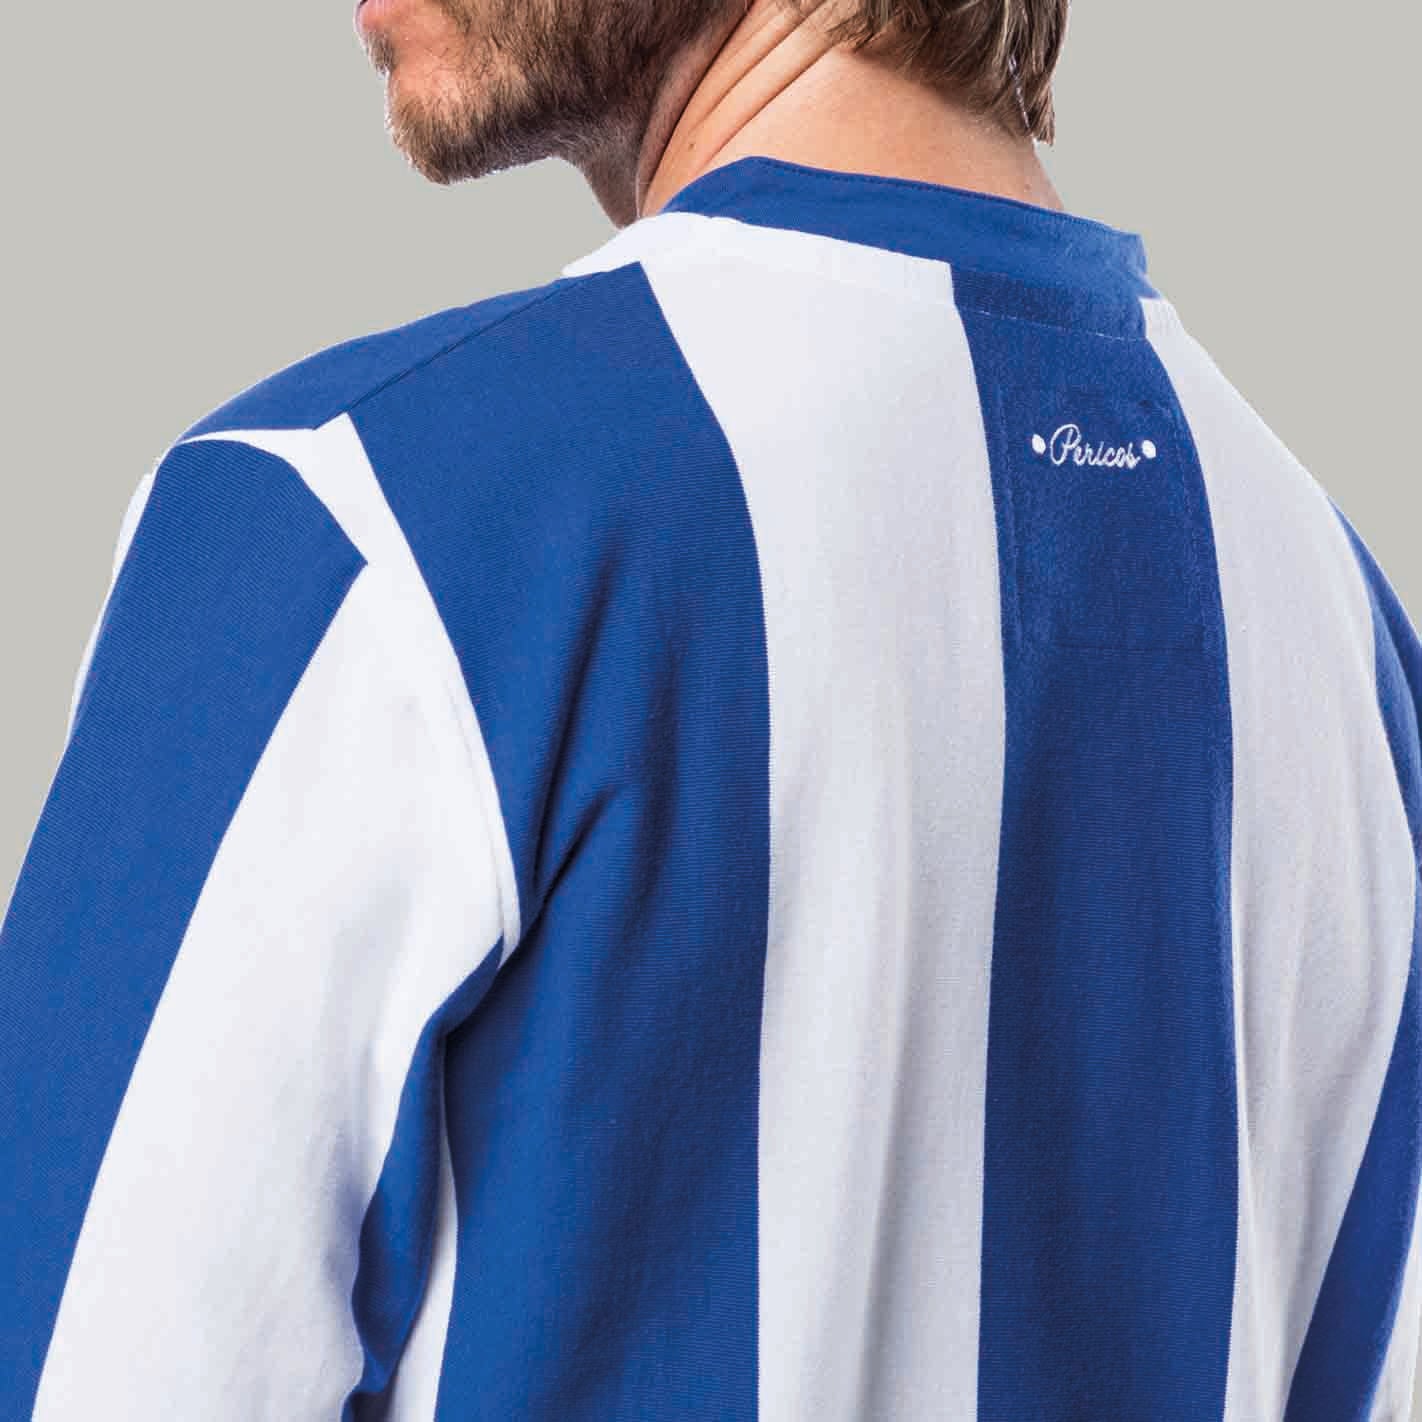 RCD Espanyol - Retro football clothing- Coolligan